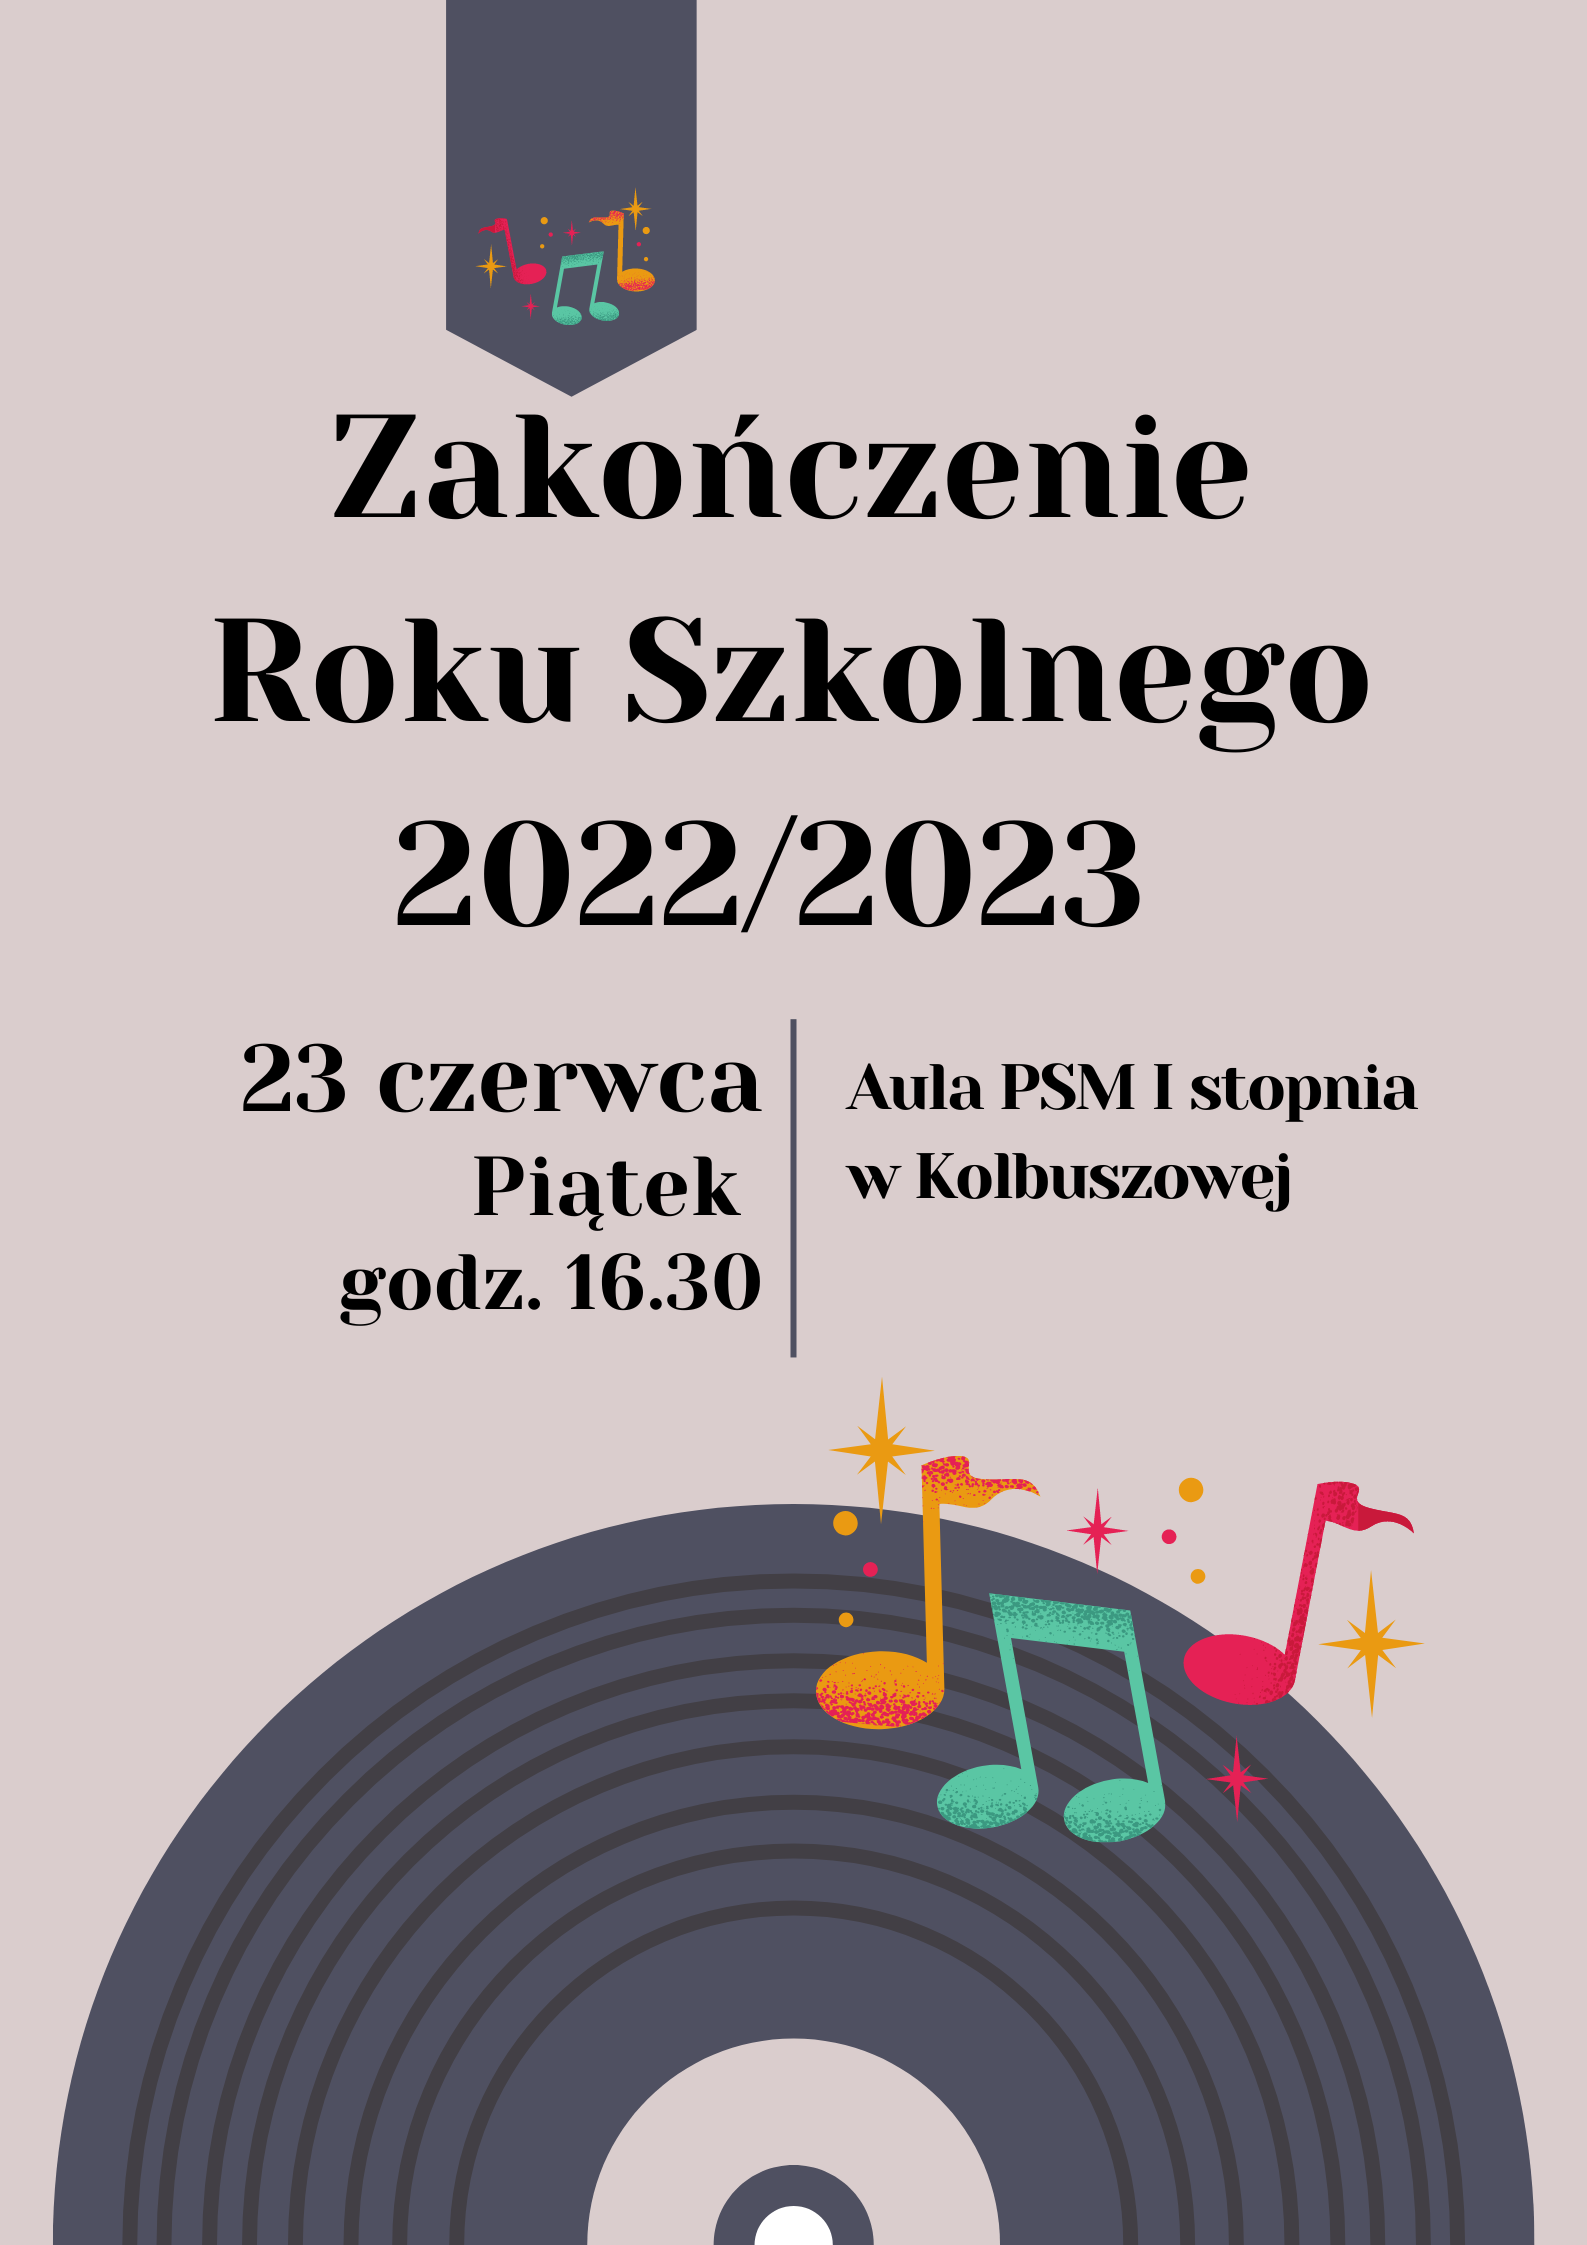 Zakończenie roku szkolnego 2022/2023